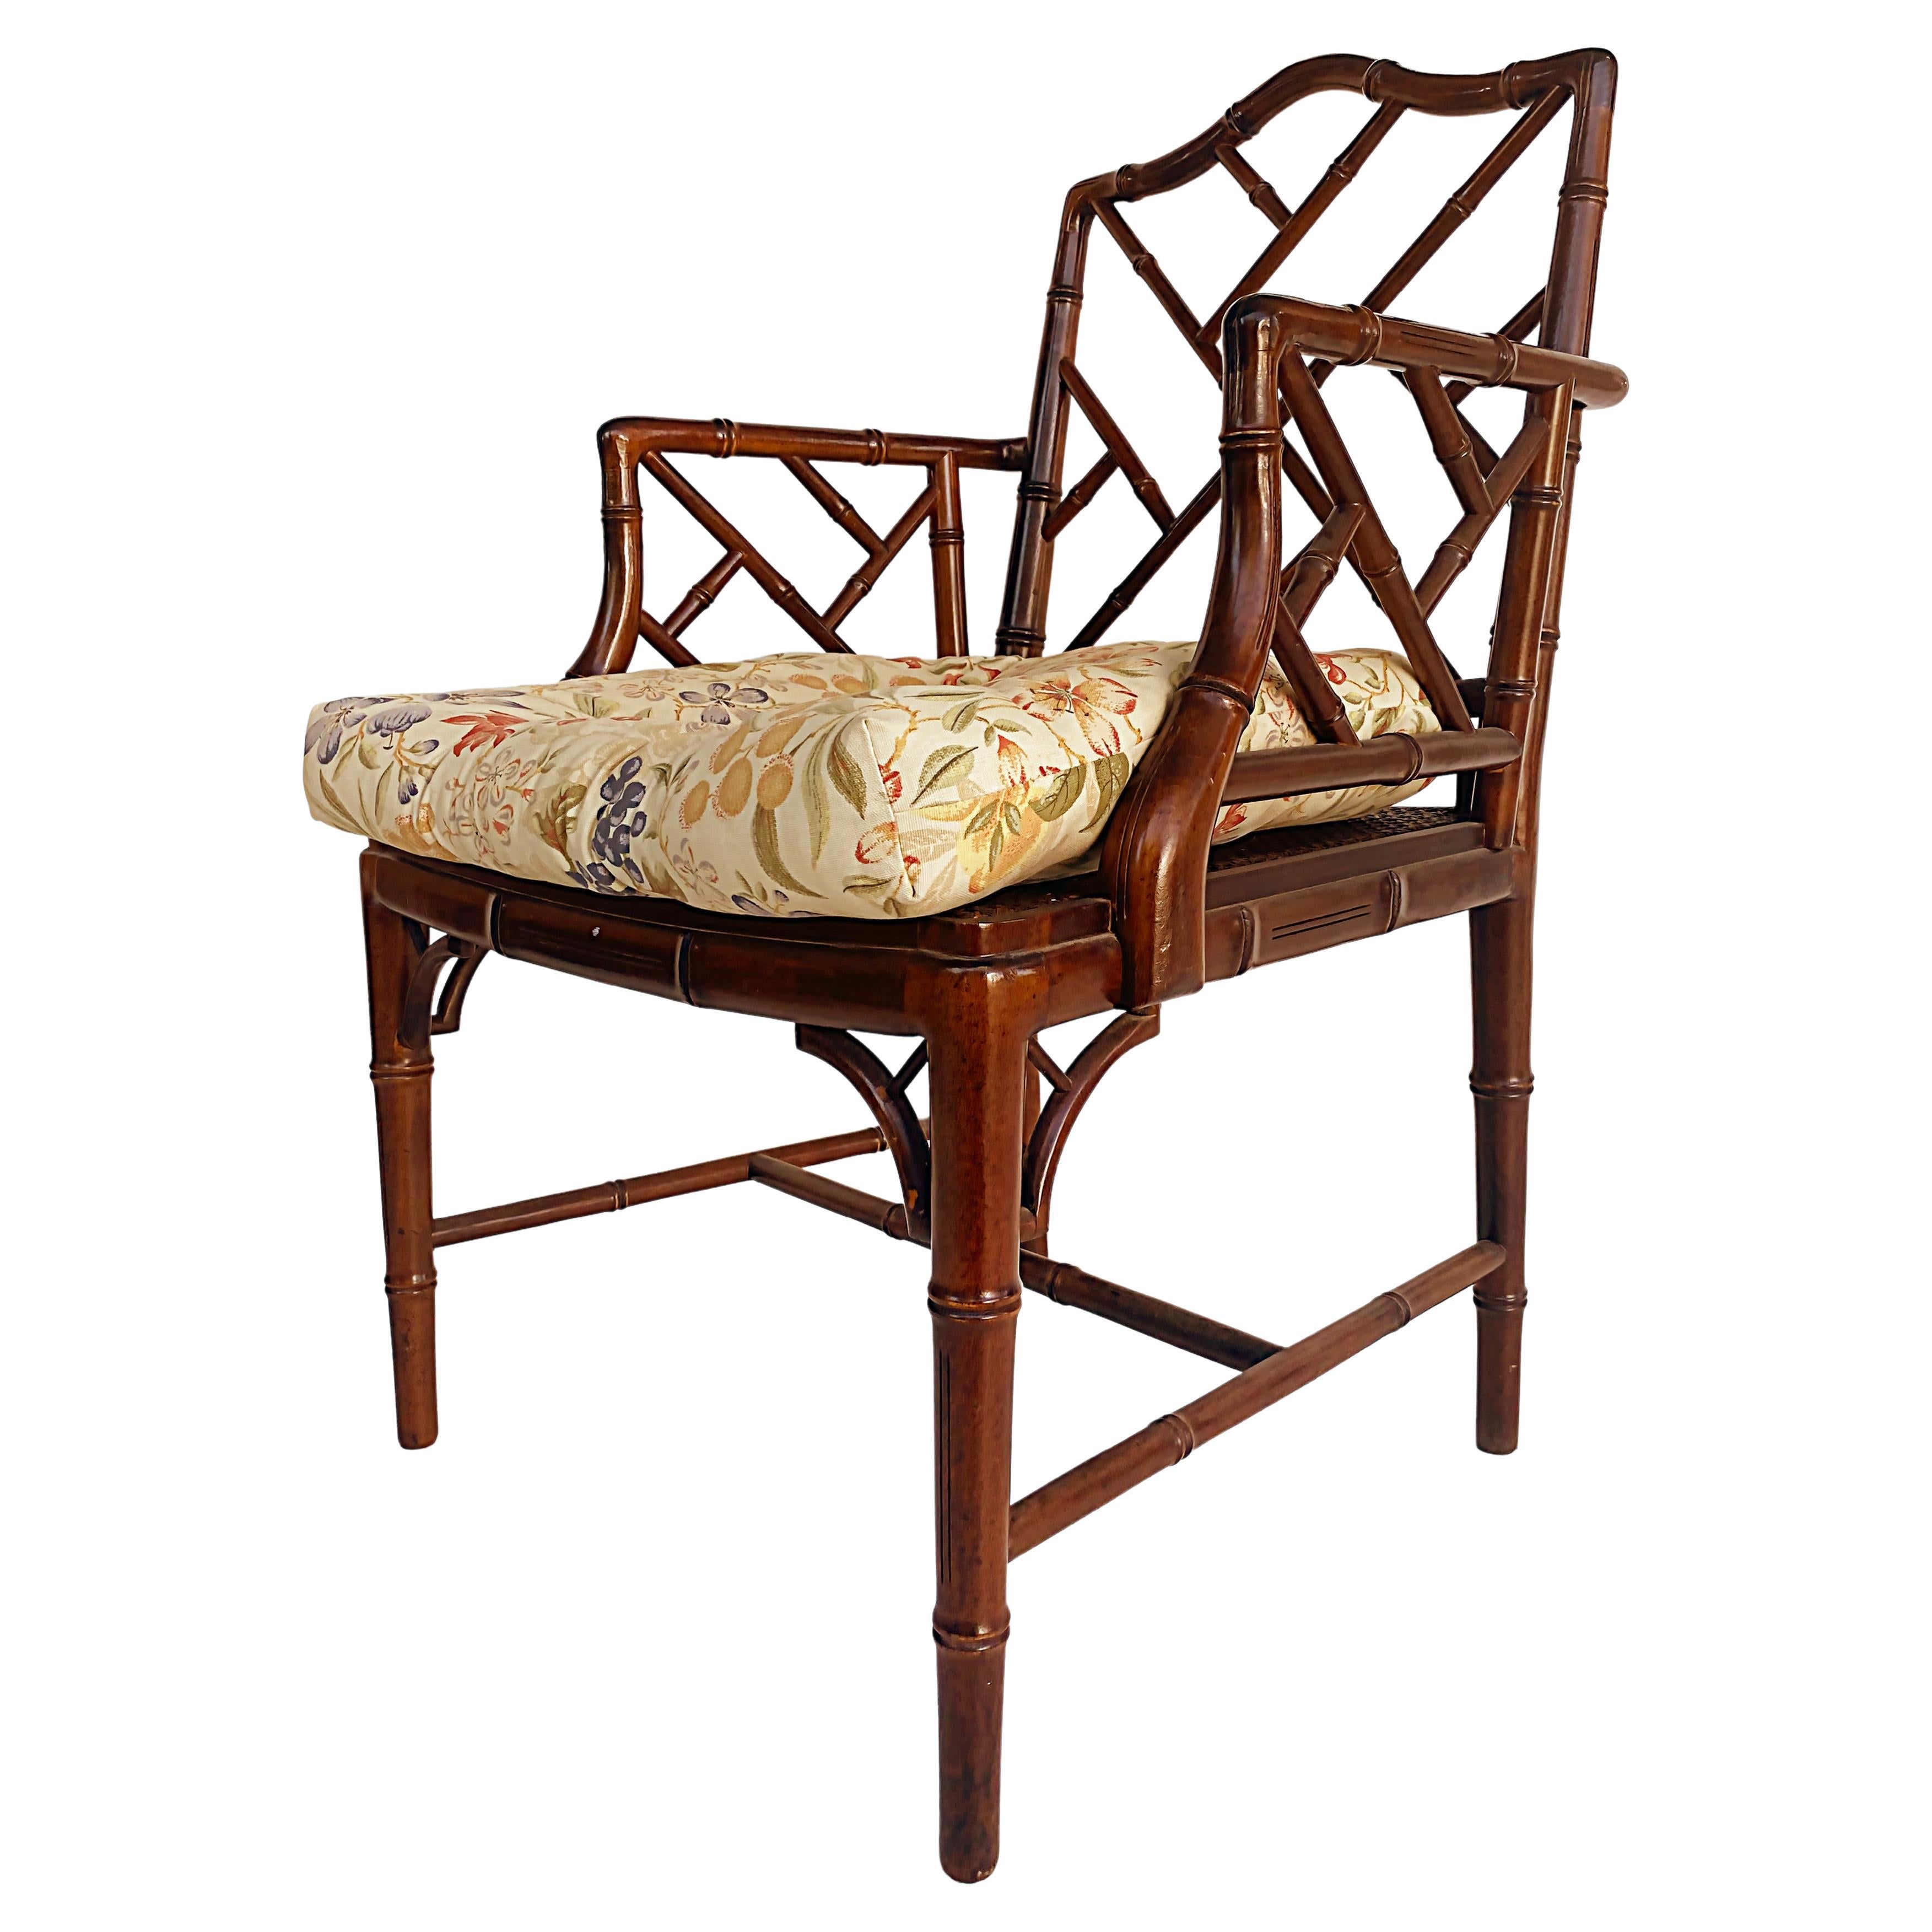 Chinesischer Sessel aus Kunstbambus im Chippendale-Stil, Sitz aus Schilfrohr, Sitz aus Rohr, loses Sitzkissen